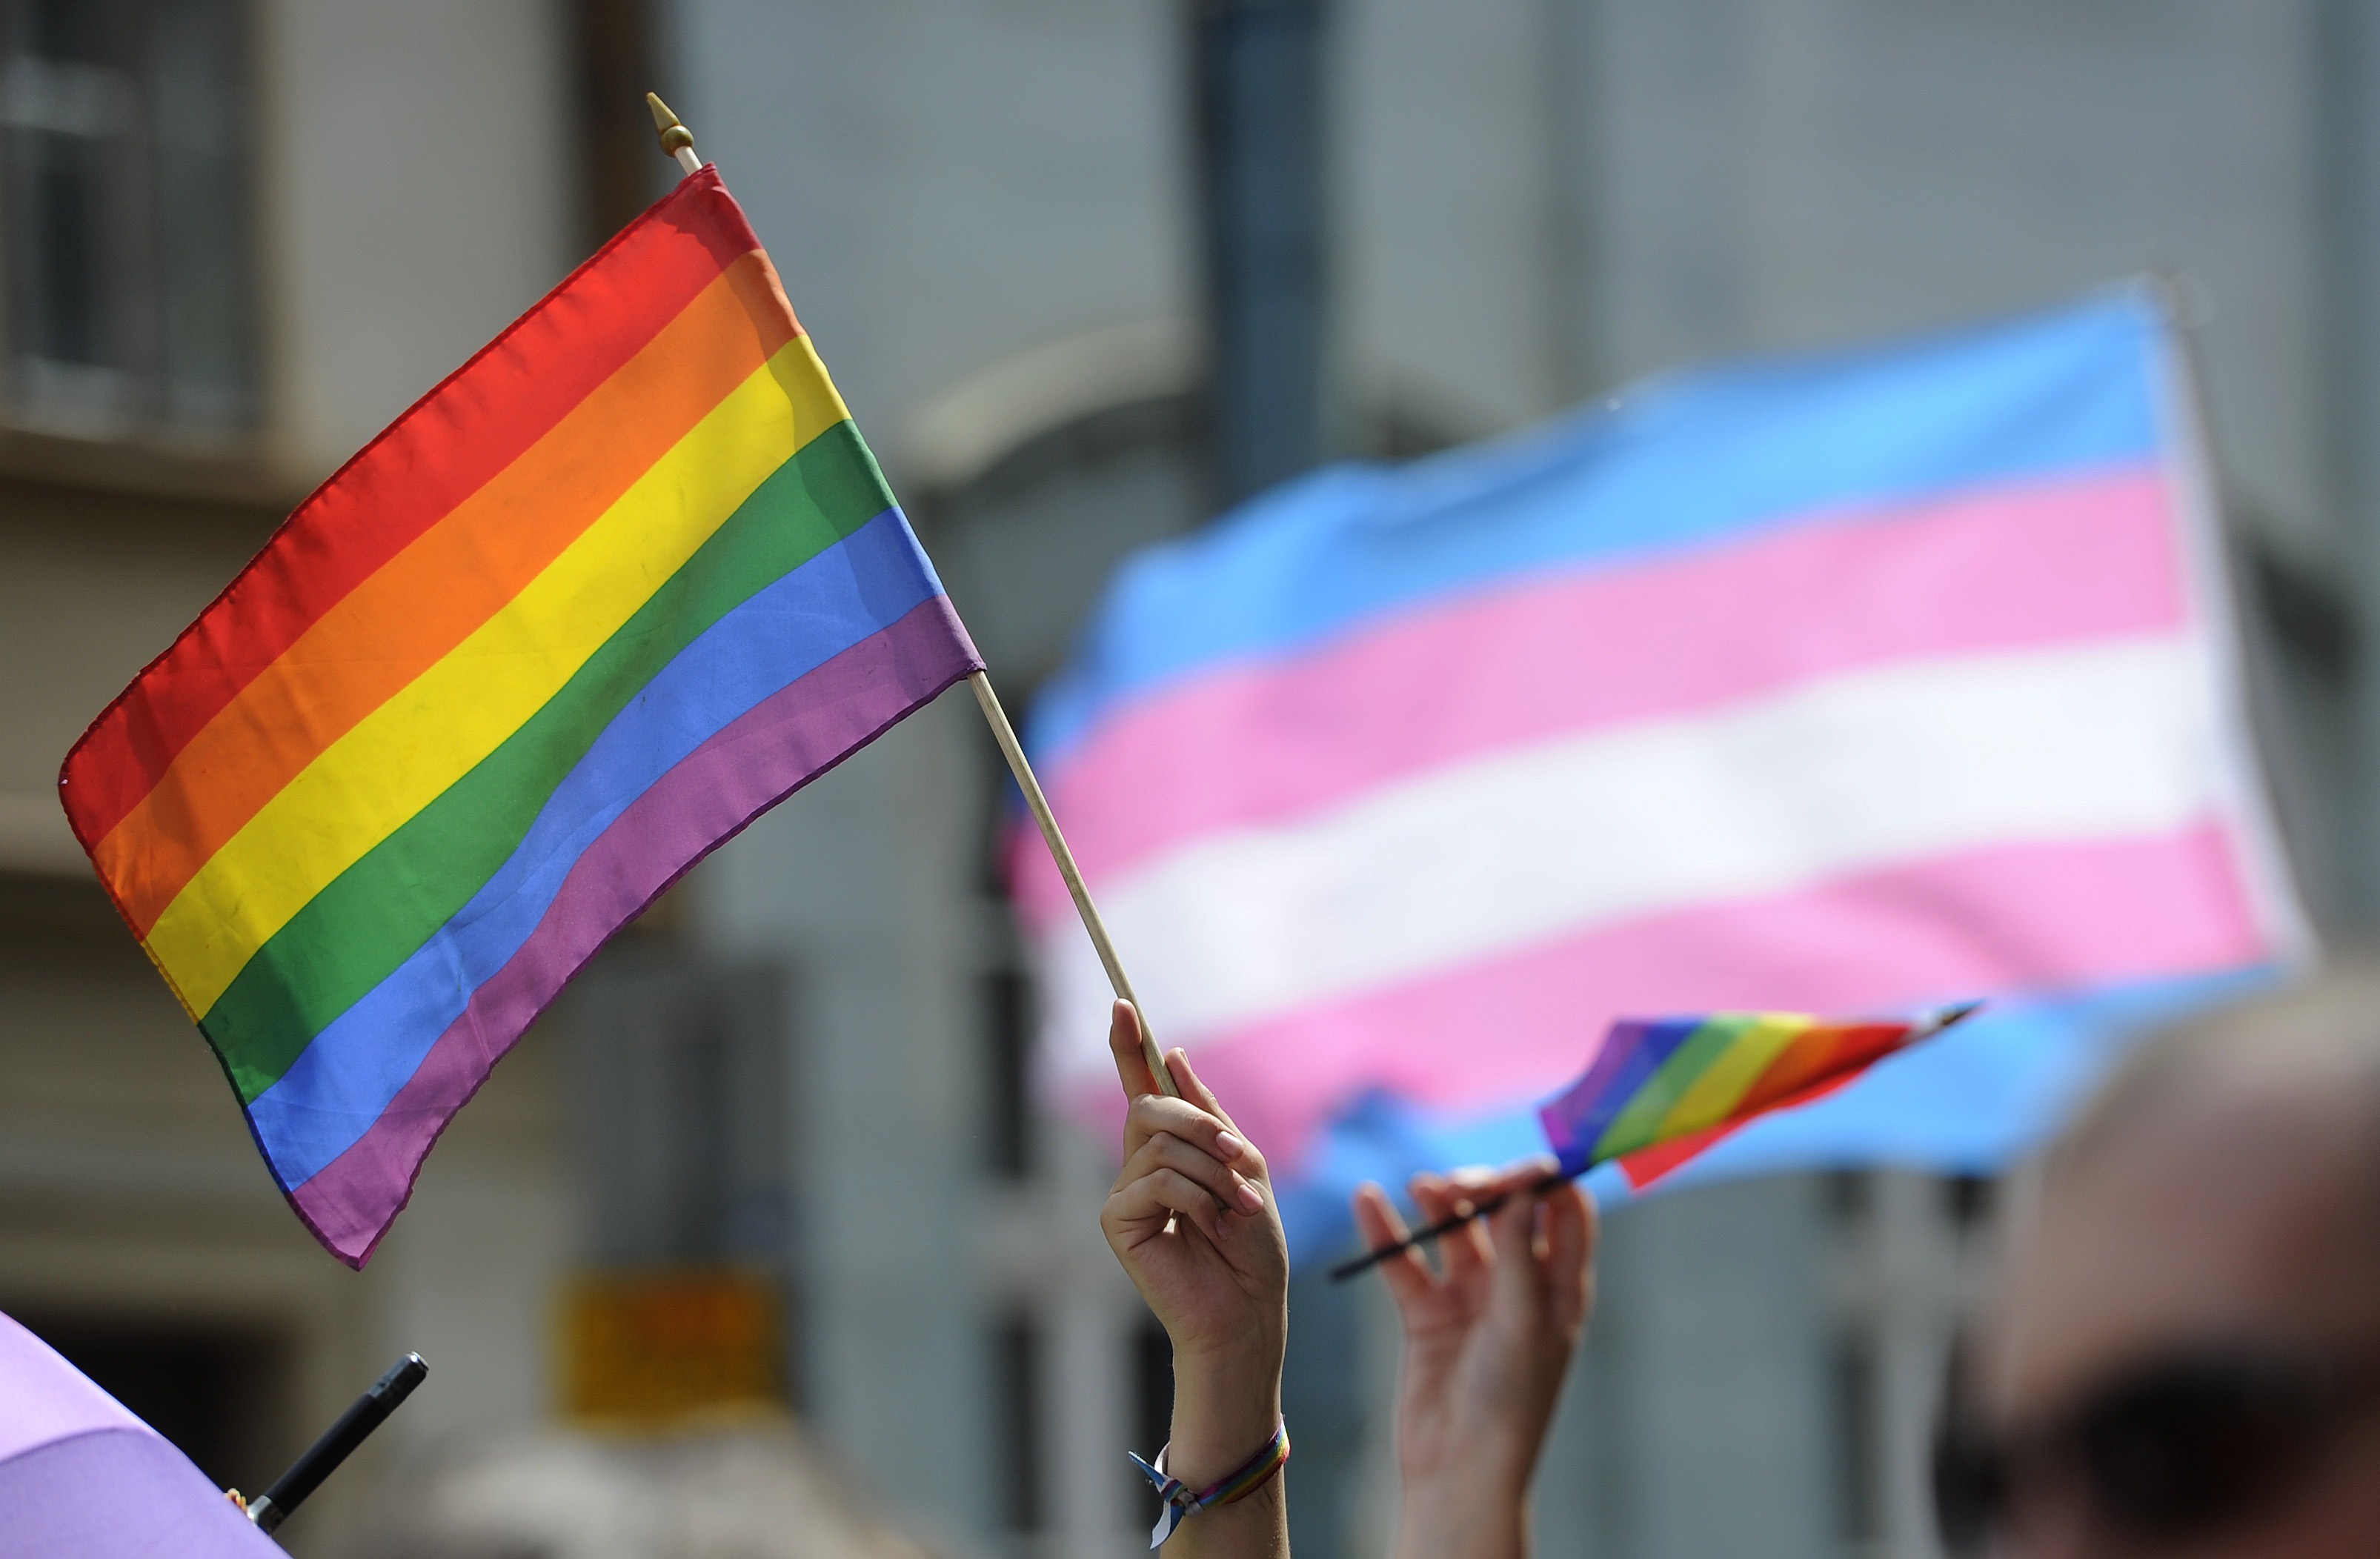 Resultado de imagen para trans pride flag march